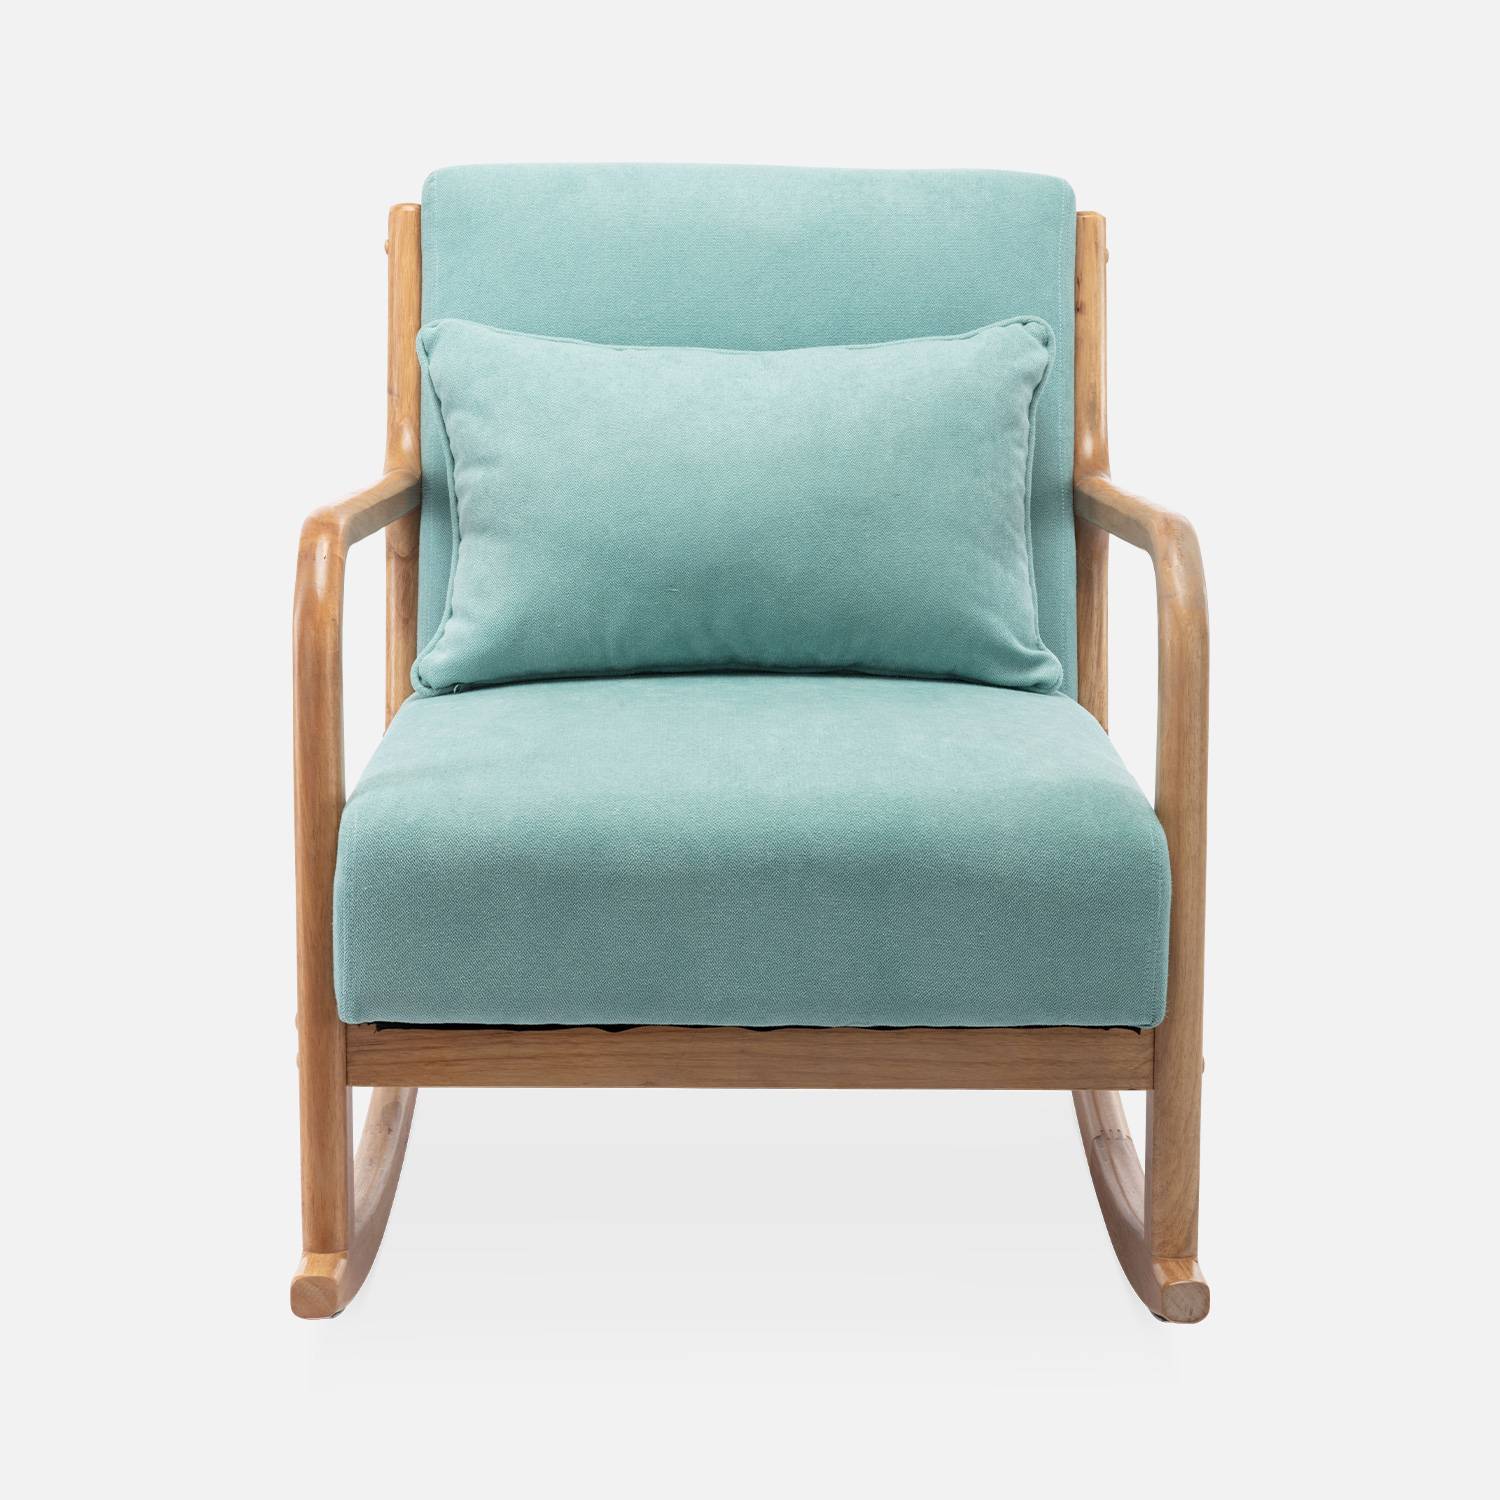 Cadeira de baloiço de design em madeira e tecido, 1 lugar, cadeira de baloiço escandinava, verde água,sweeek,Photo5